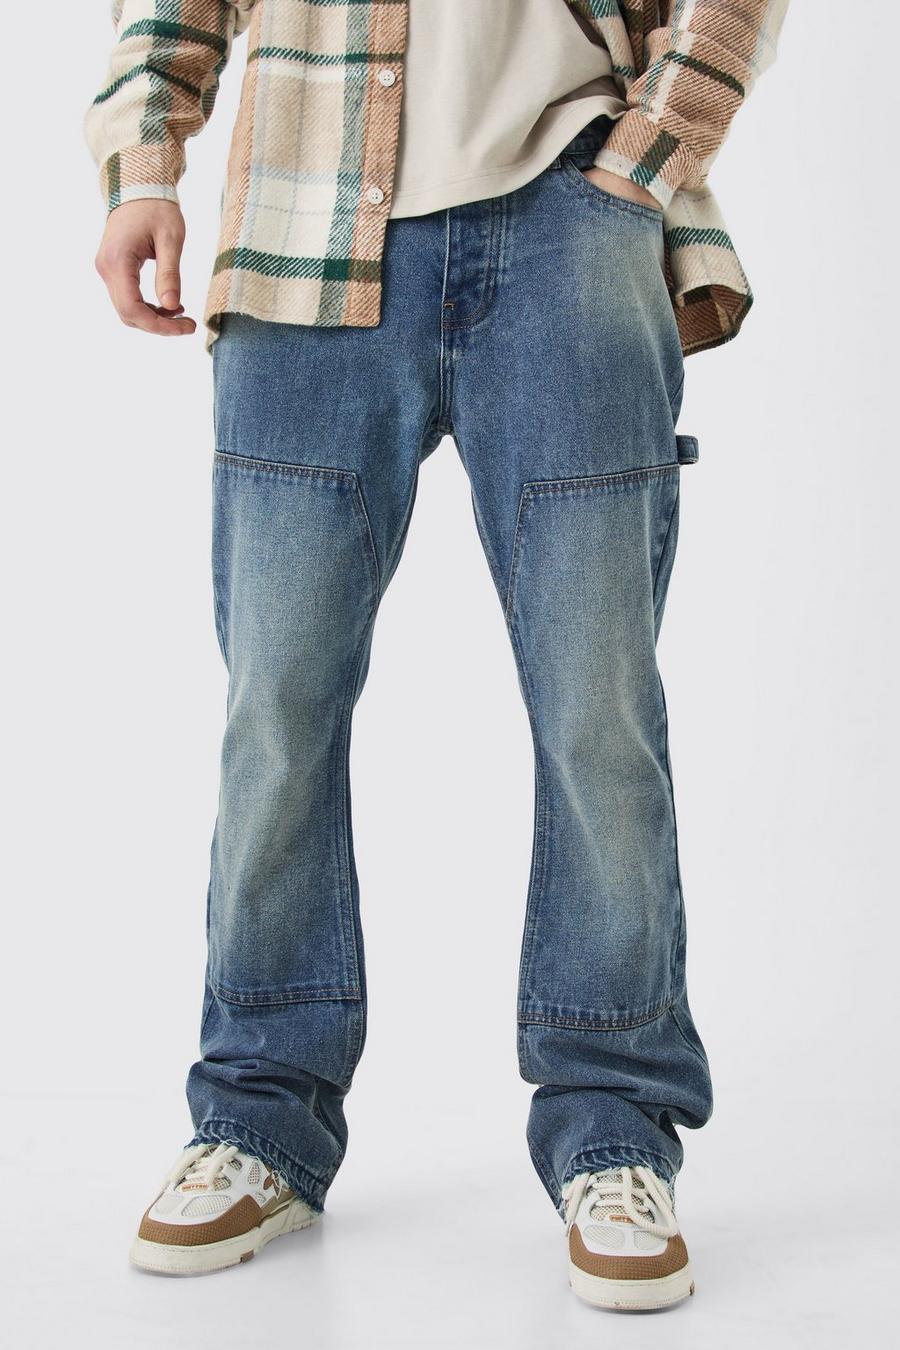 Jeans a zampa stile Carpenter Tall Slim Fit in denim rigido, Antique blue